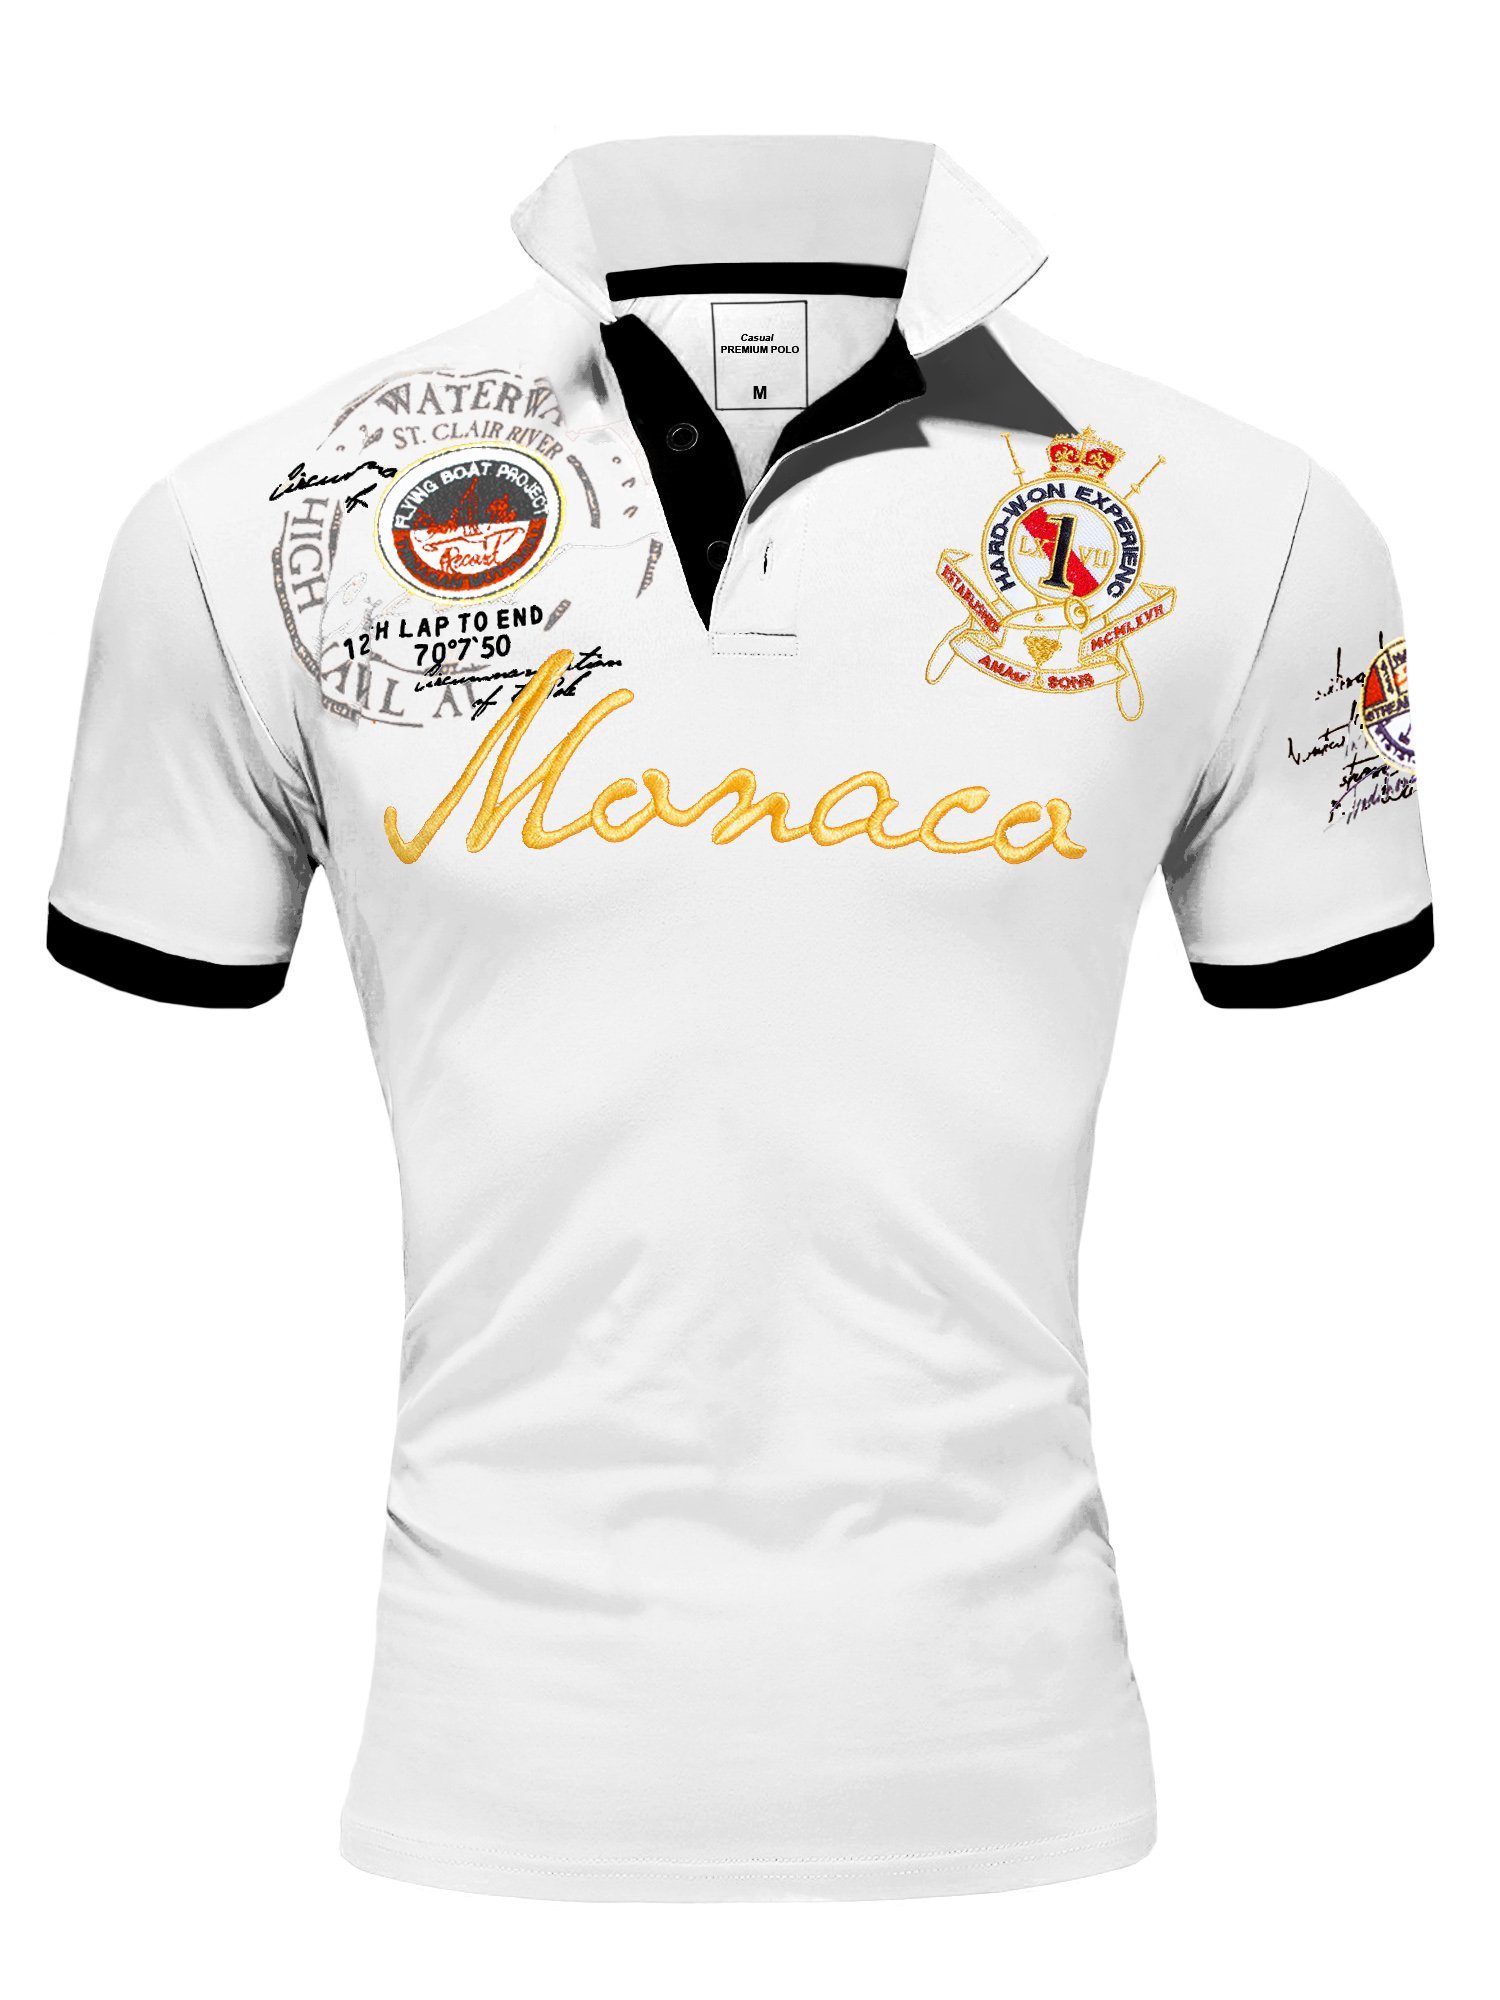 Amaci&Sons Poloshirt Monaco 2.0 Poloshirt mit Stickerei Herren Basic Kontrast Monaco Stickerei Kurzarm Polohemd T-Shirt Weiß